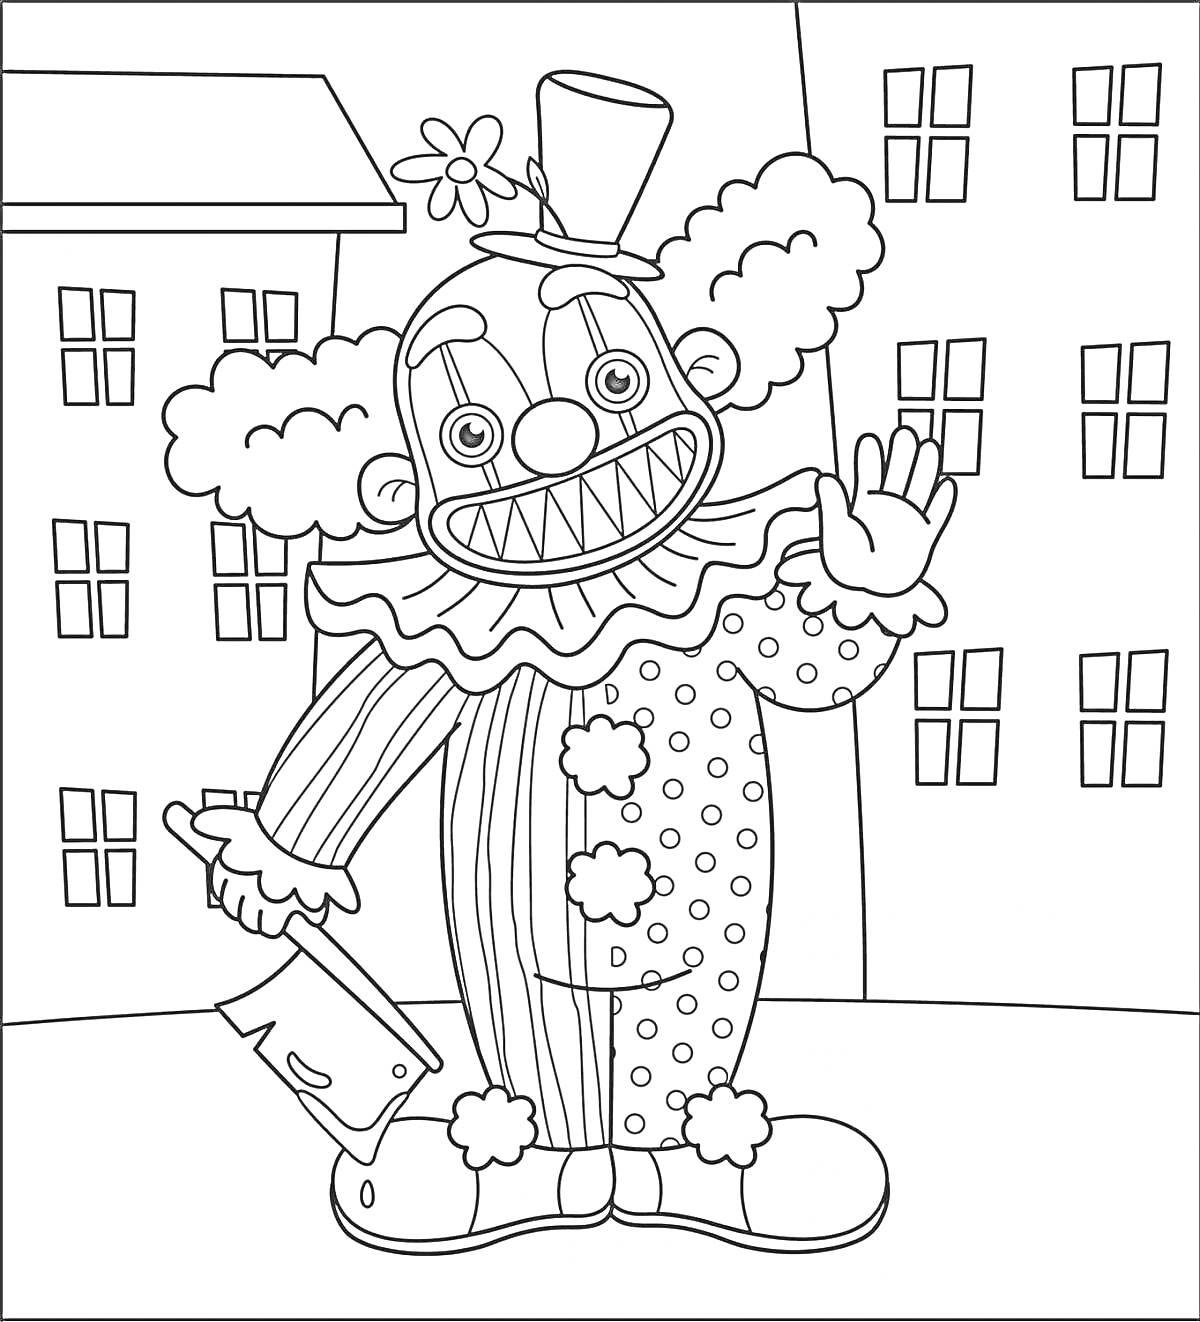 Клоун с тесаком на улице с домами